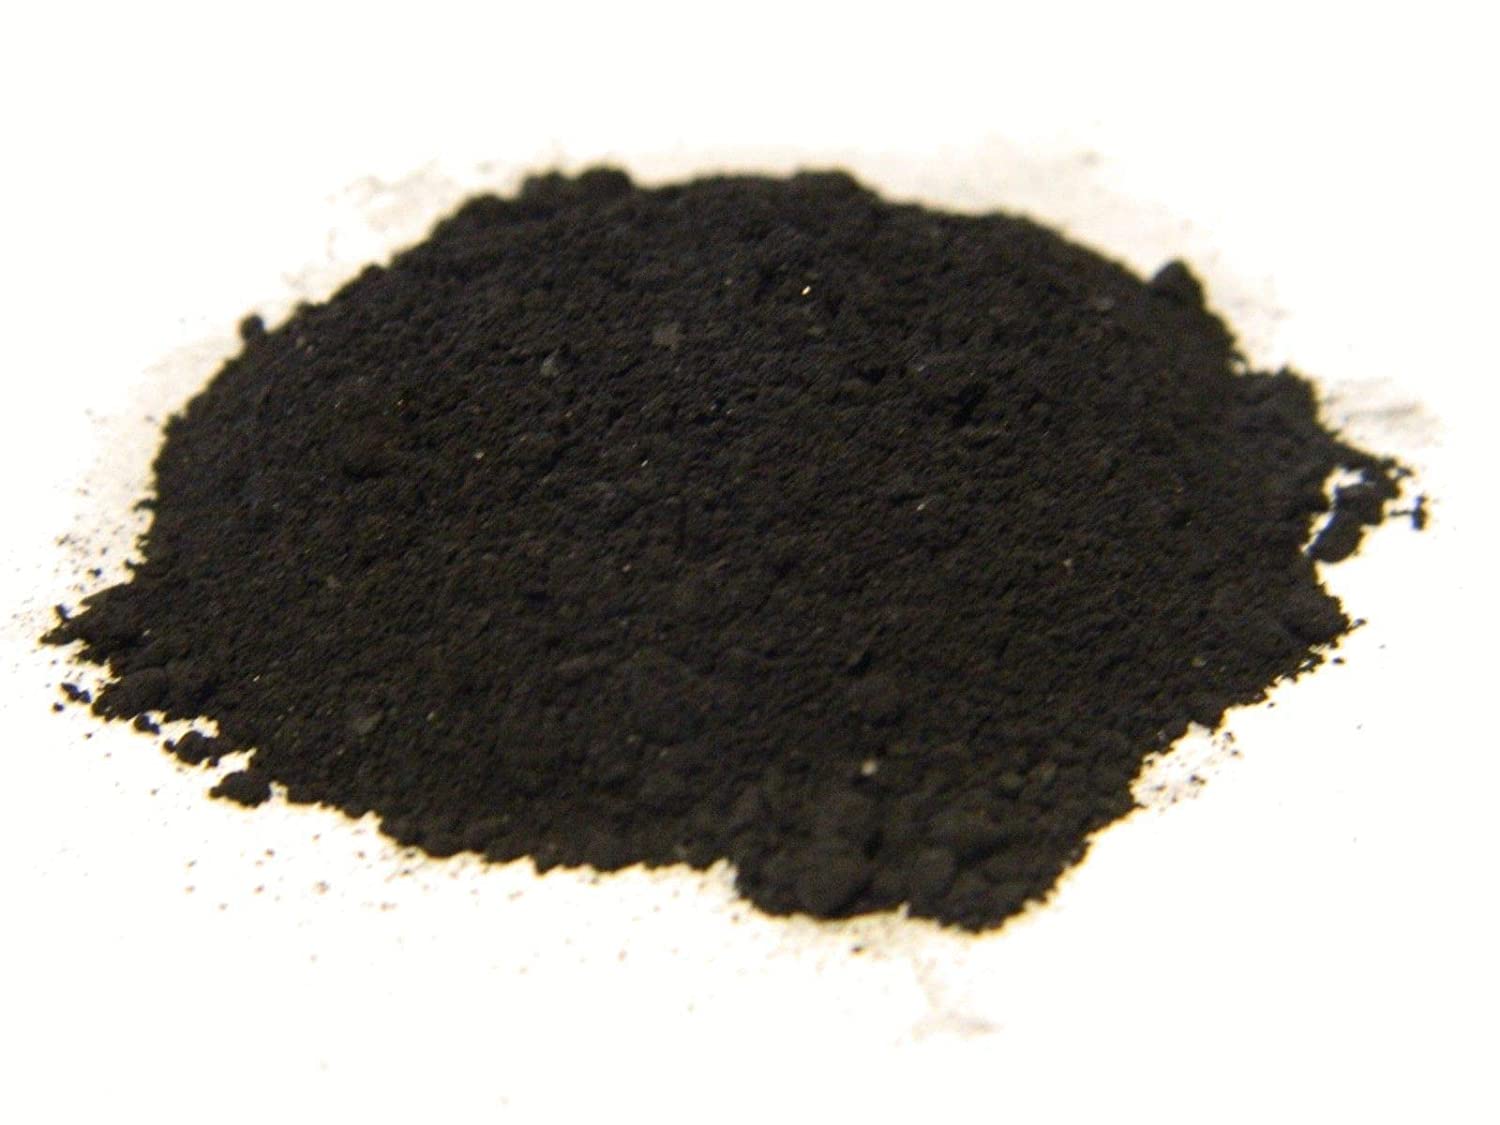 Earth Alchemy - Shungite Powder 25 micron - 222g